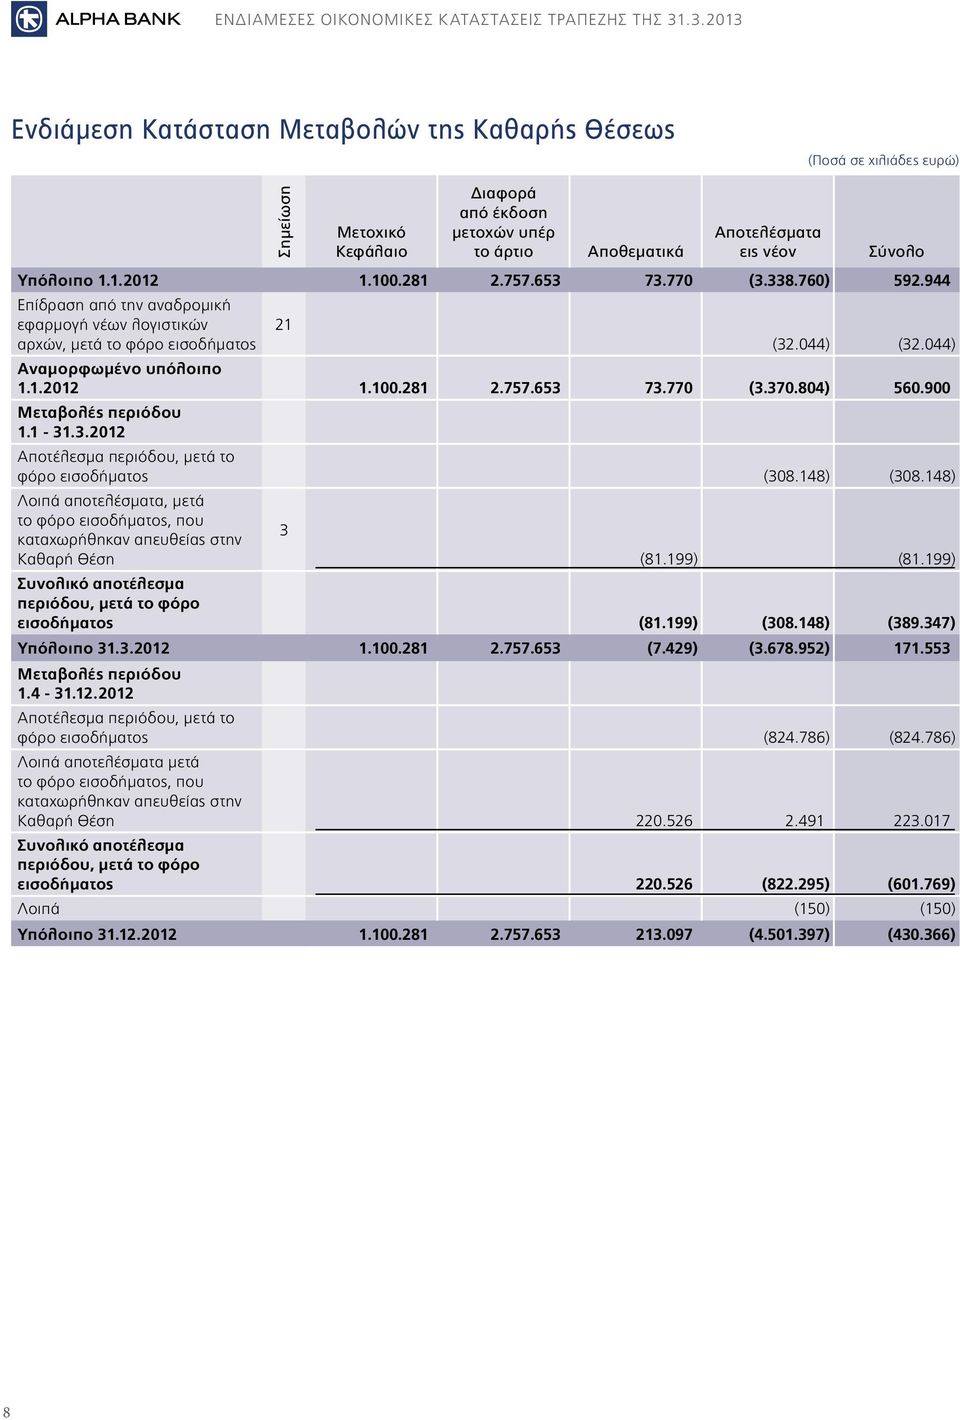 804) 560.900 Μεταβολές περιόδου 1.1-31.3.2012 Αποτέλεσμα περιόδου, μετά το φόρο εισοδήματος (308.148) (308.